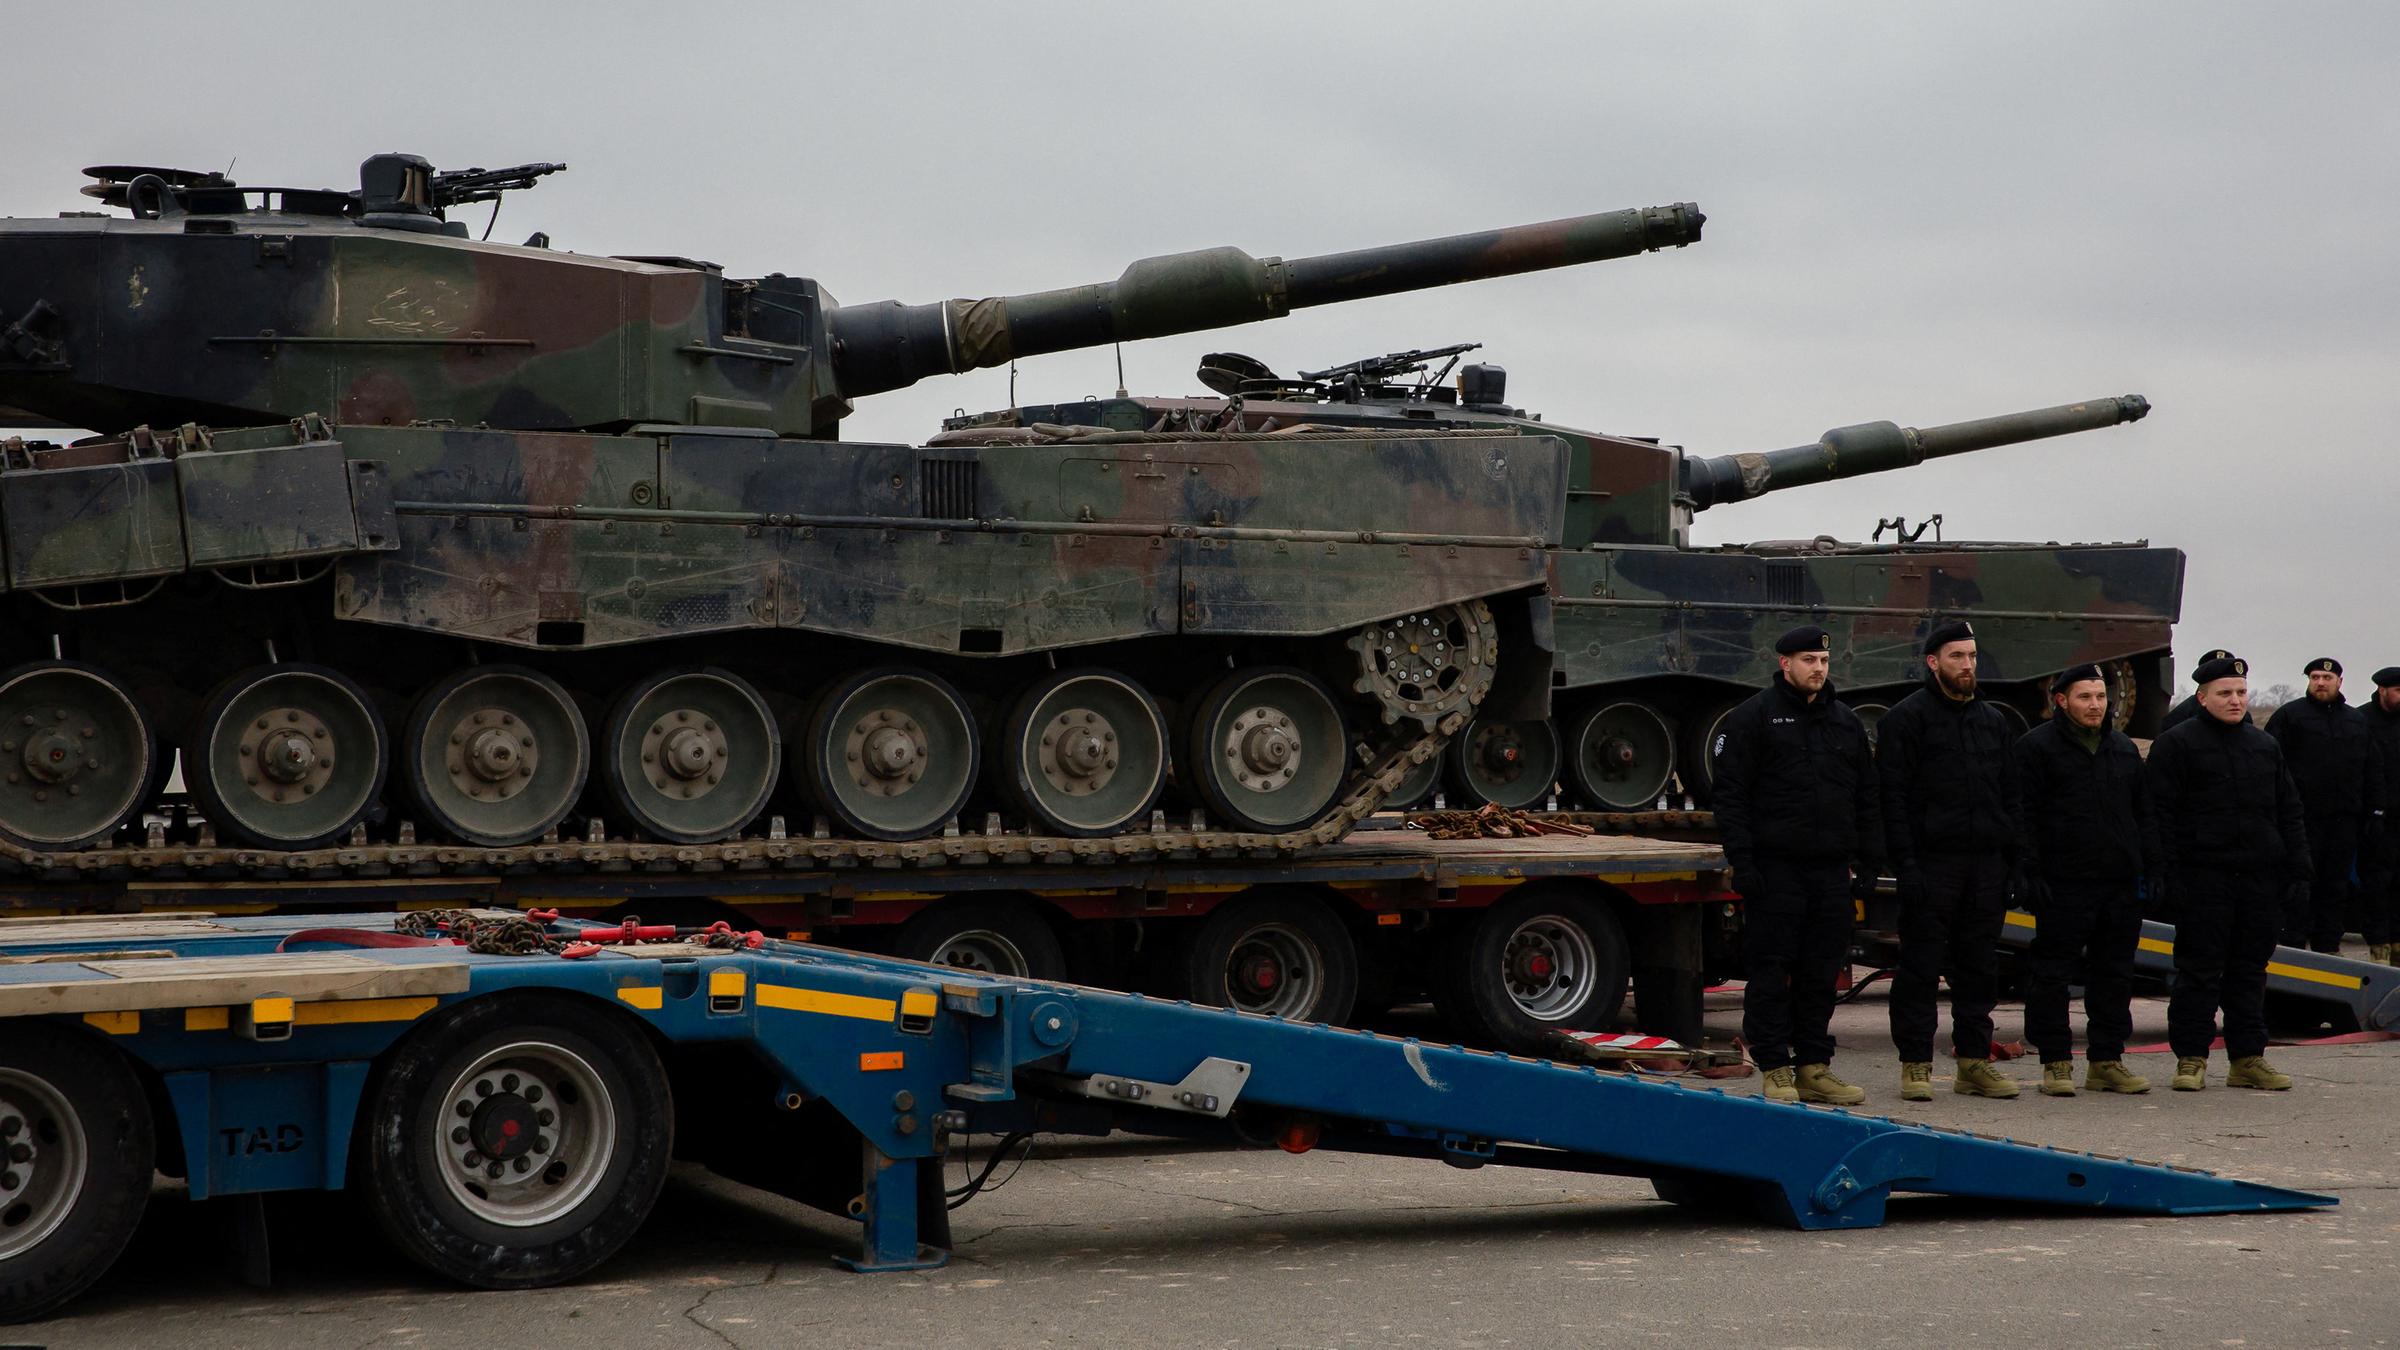 Polish Leopard tanks delivered to Ukraine